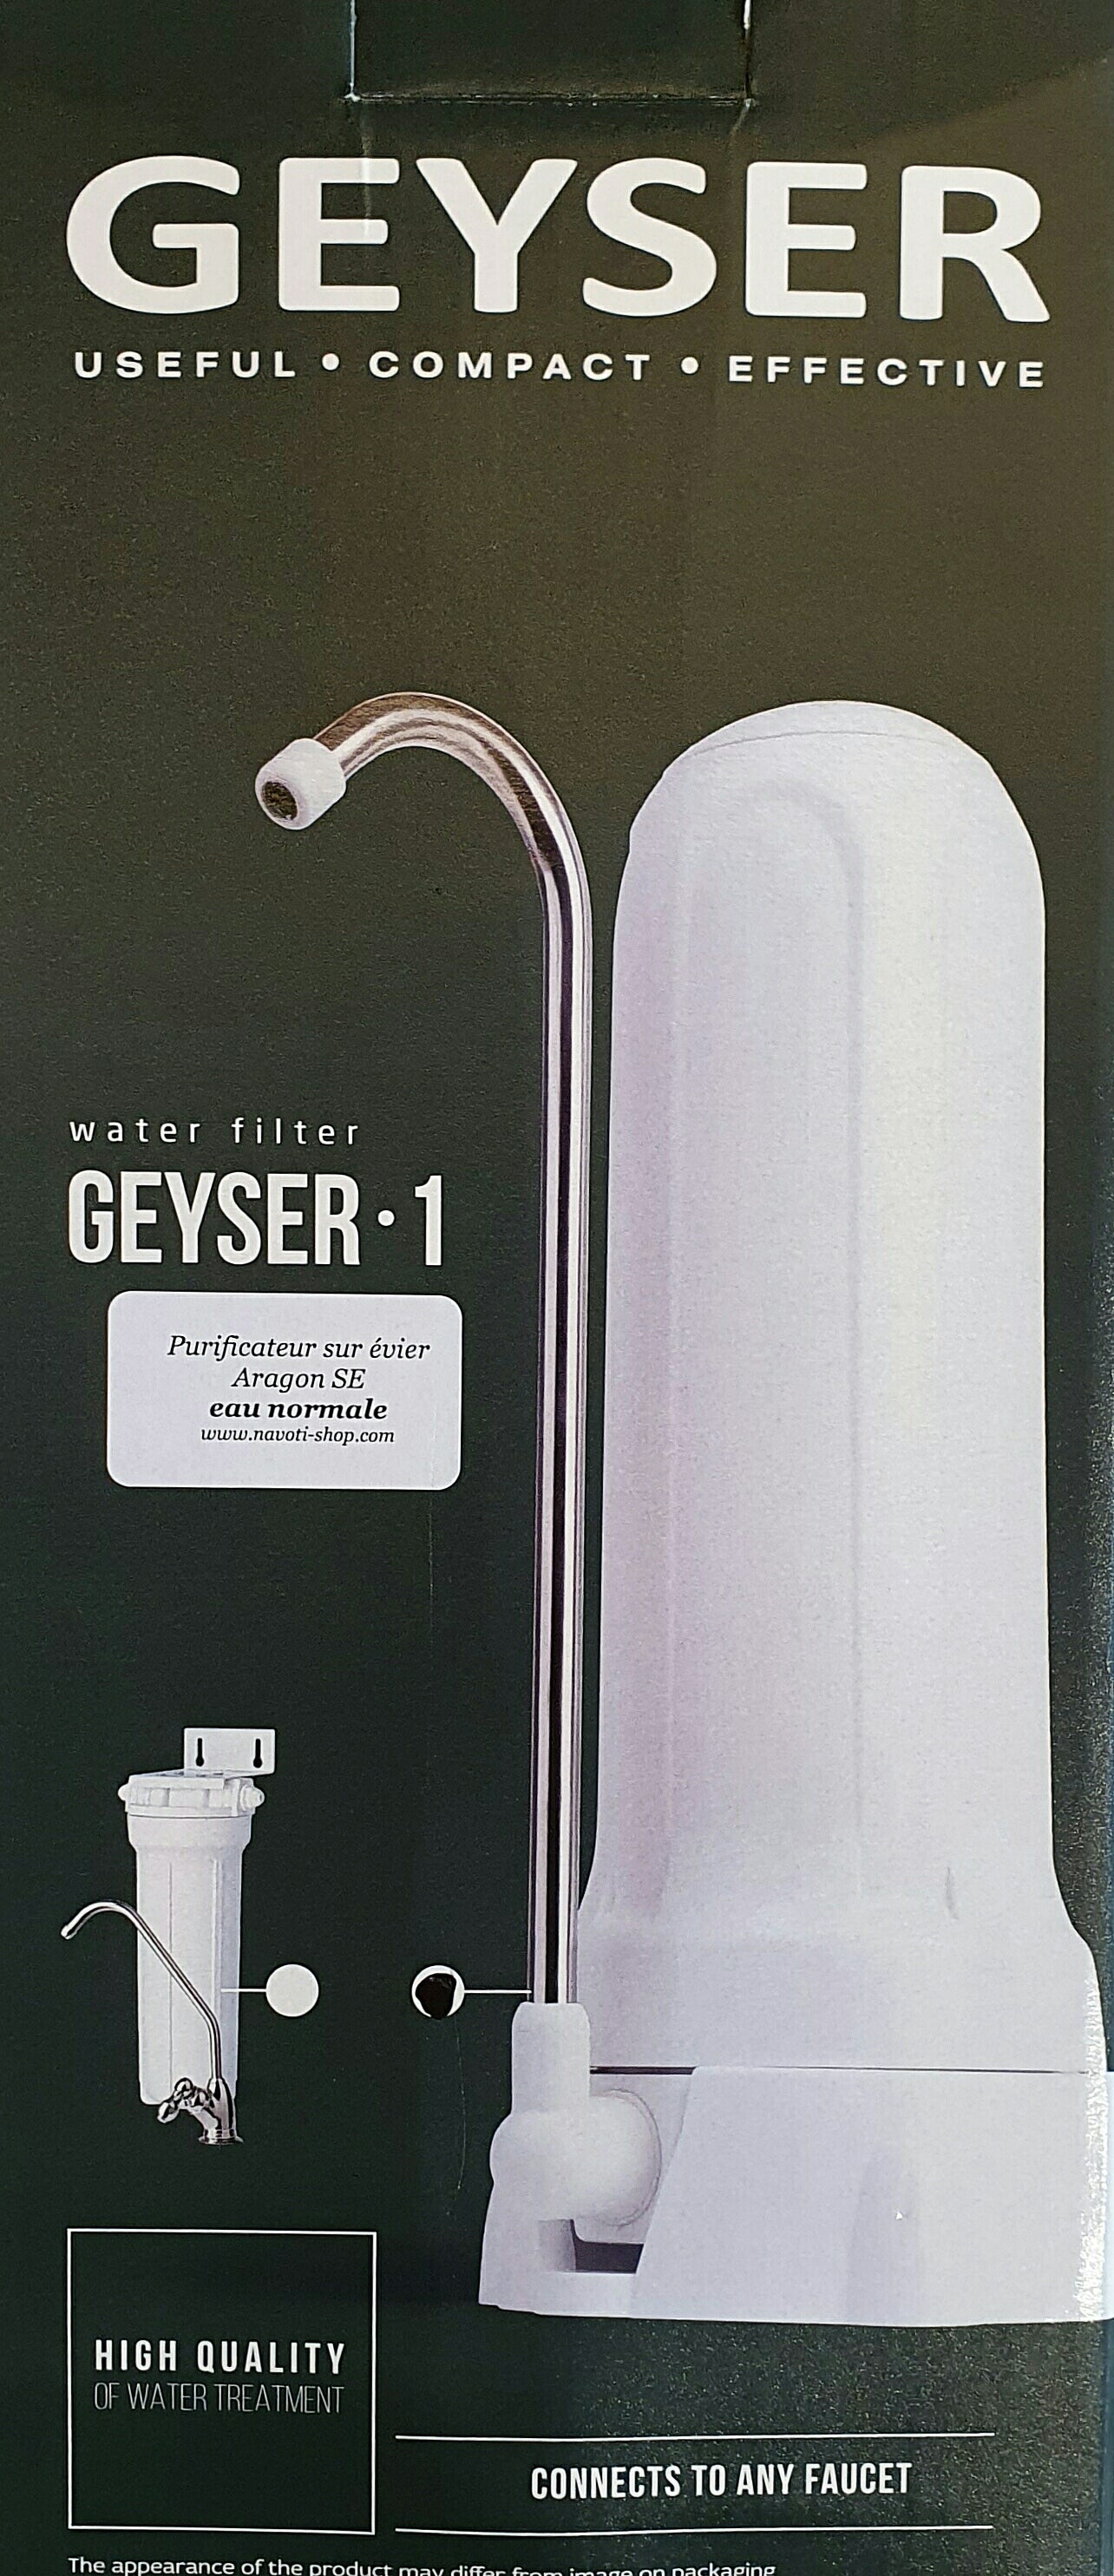 Geyser technology: Aragon